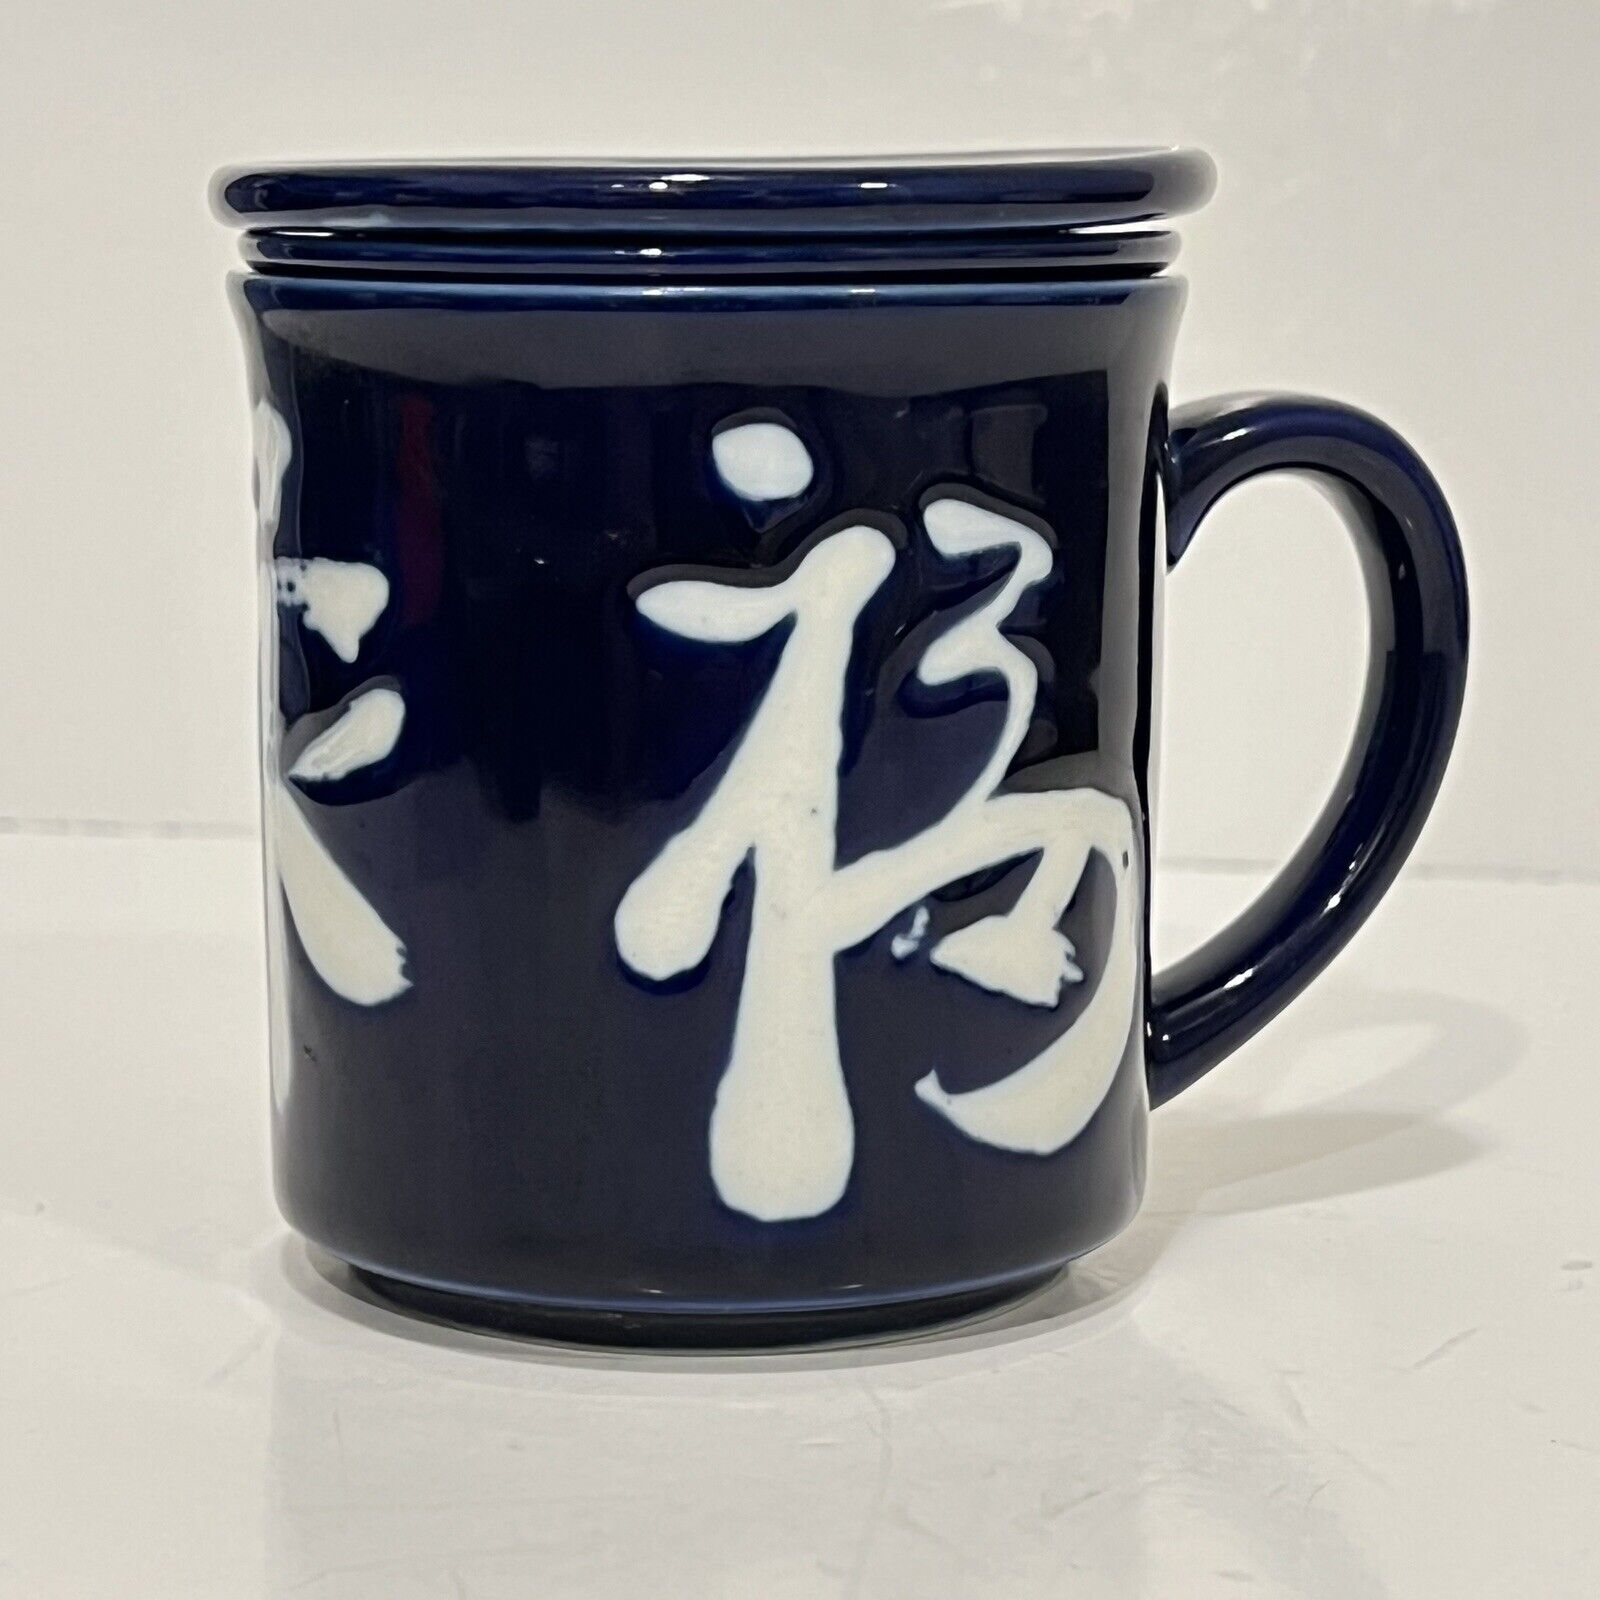 Vintage Cobalt Blue Kotobuki Japanese Loose Leaf Tea Mug With Strainer & Lid